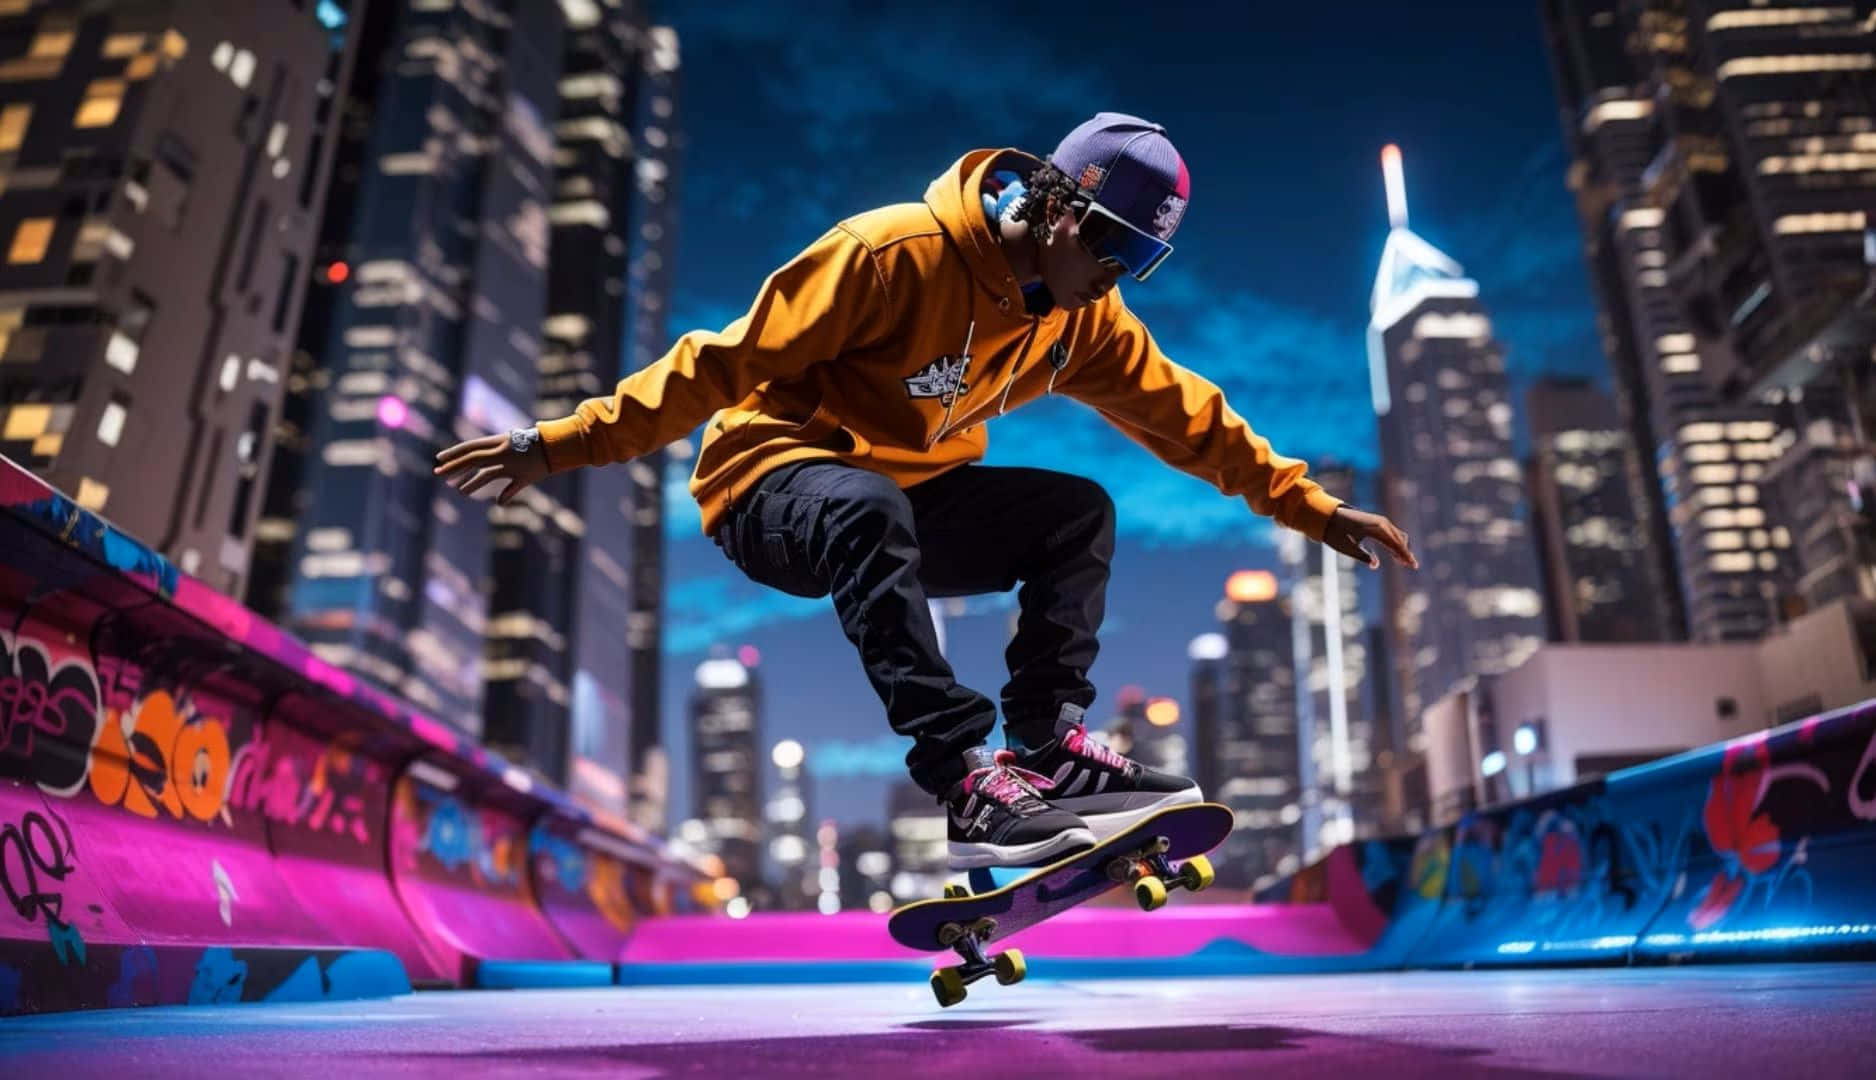 Urban Skateboarding Night Cityscape.jpg Wallpaper